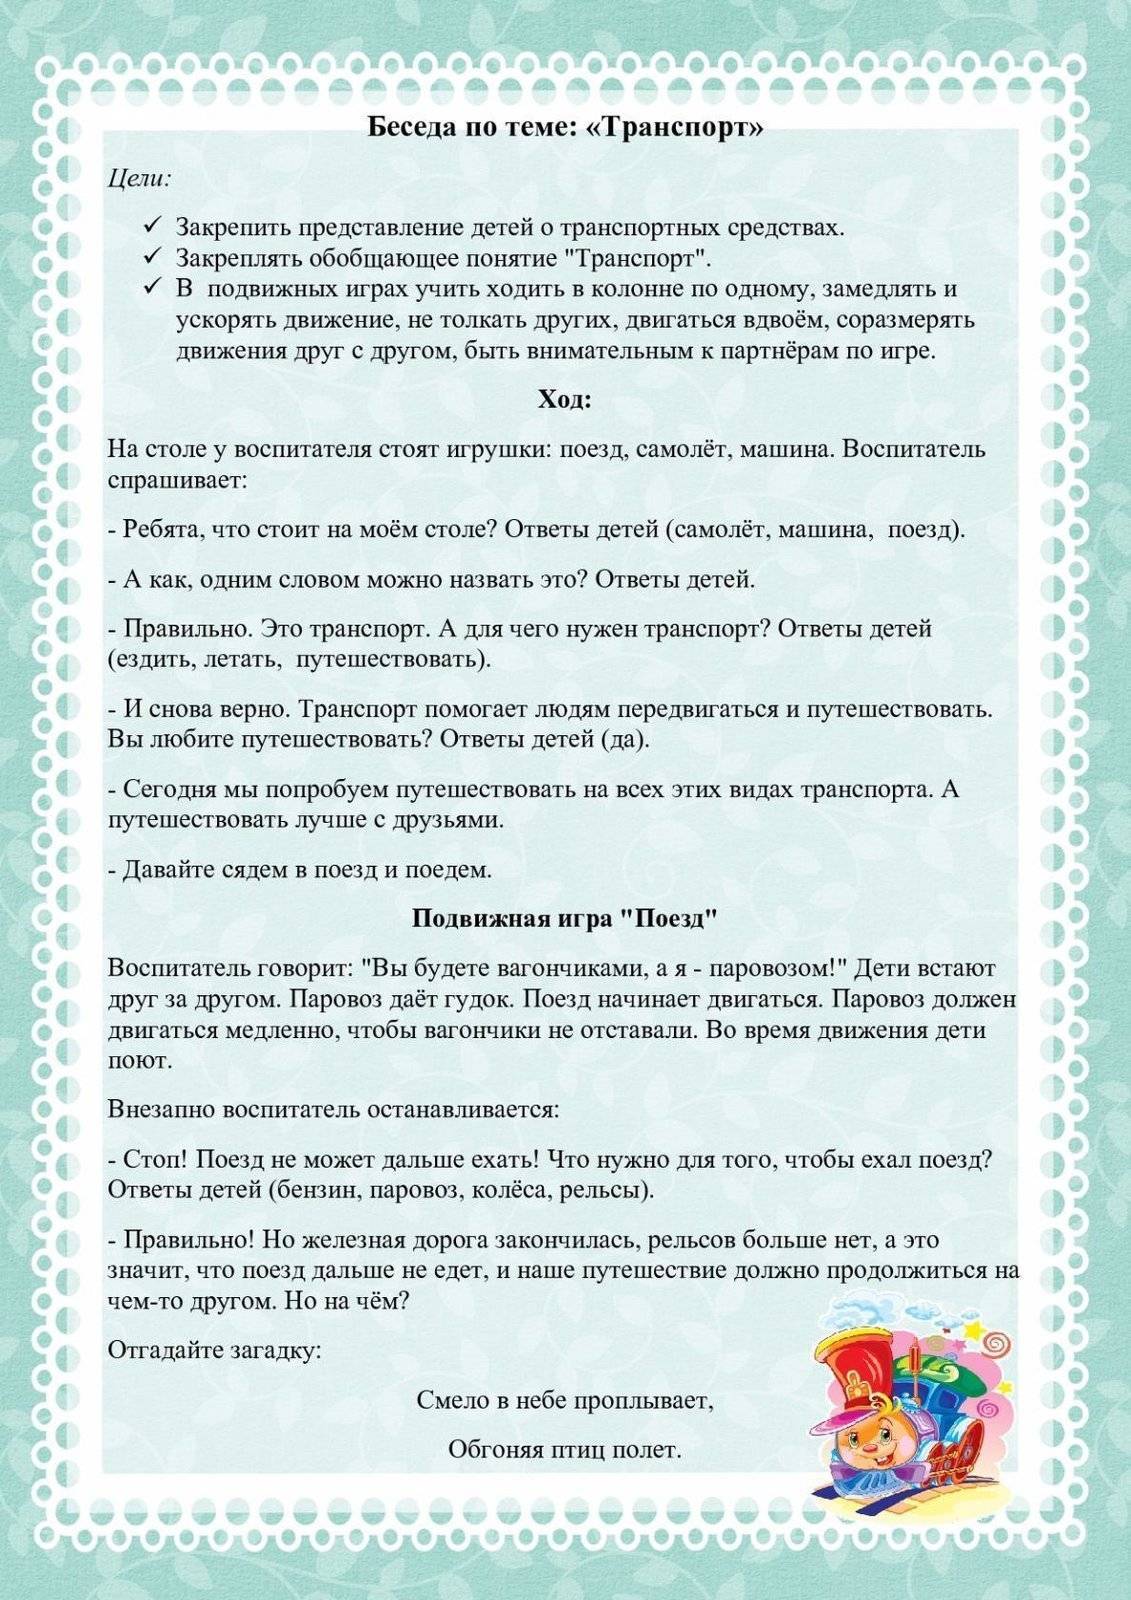 Картотека бесед для второй младшей группы. воспитателям детских садов, школьным учителям и педагогам - маам.ру